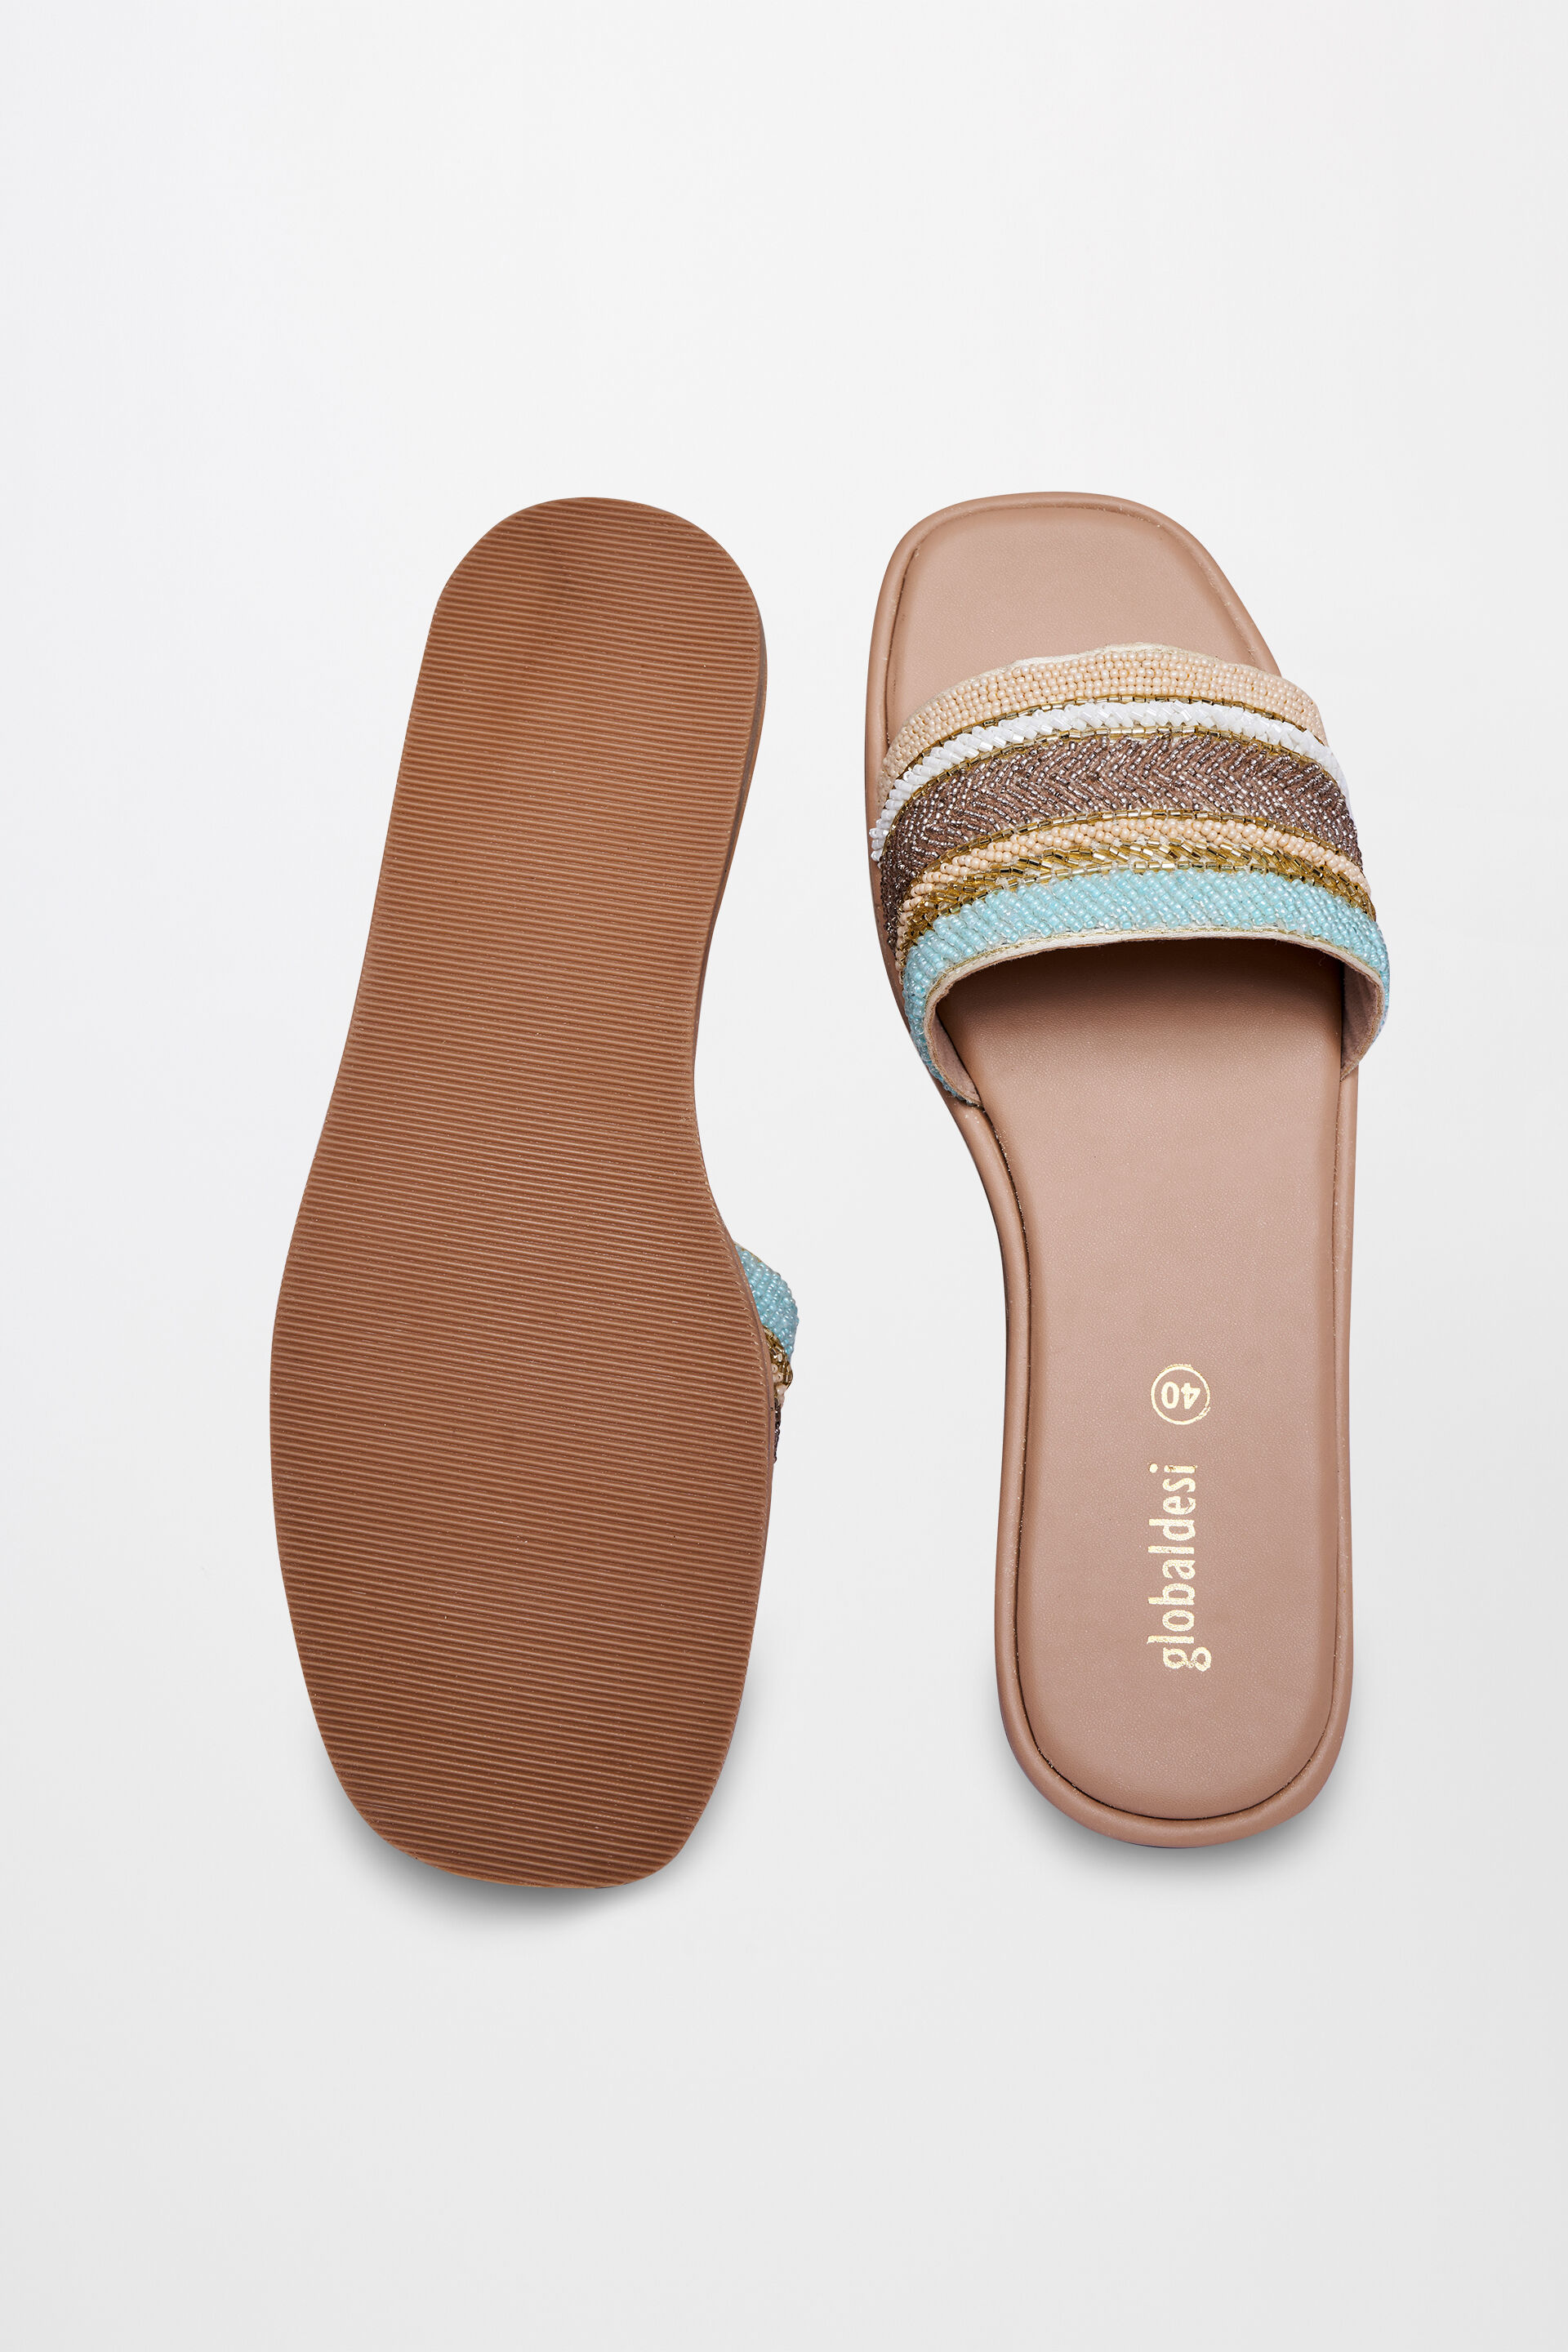 Buy Ethnic Cross Strap Sandals for Men - Neemans